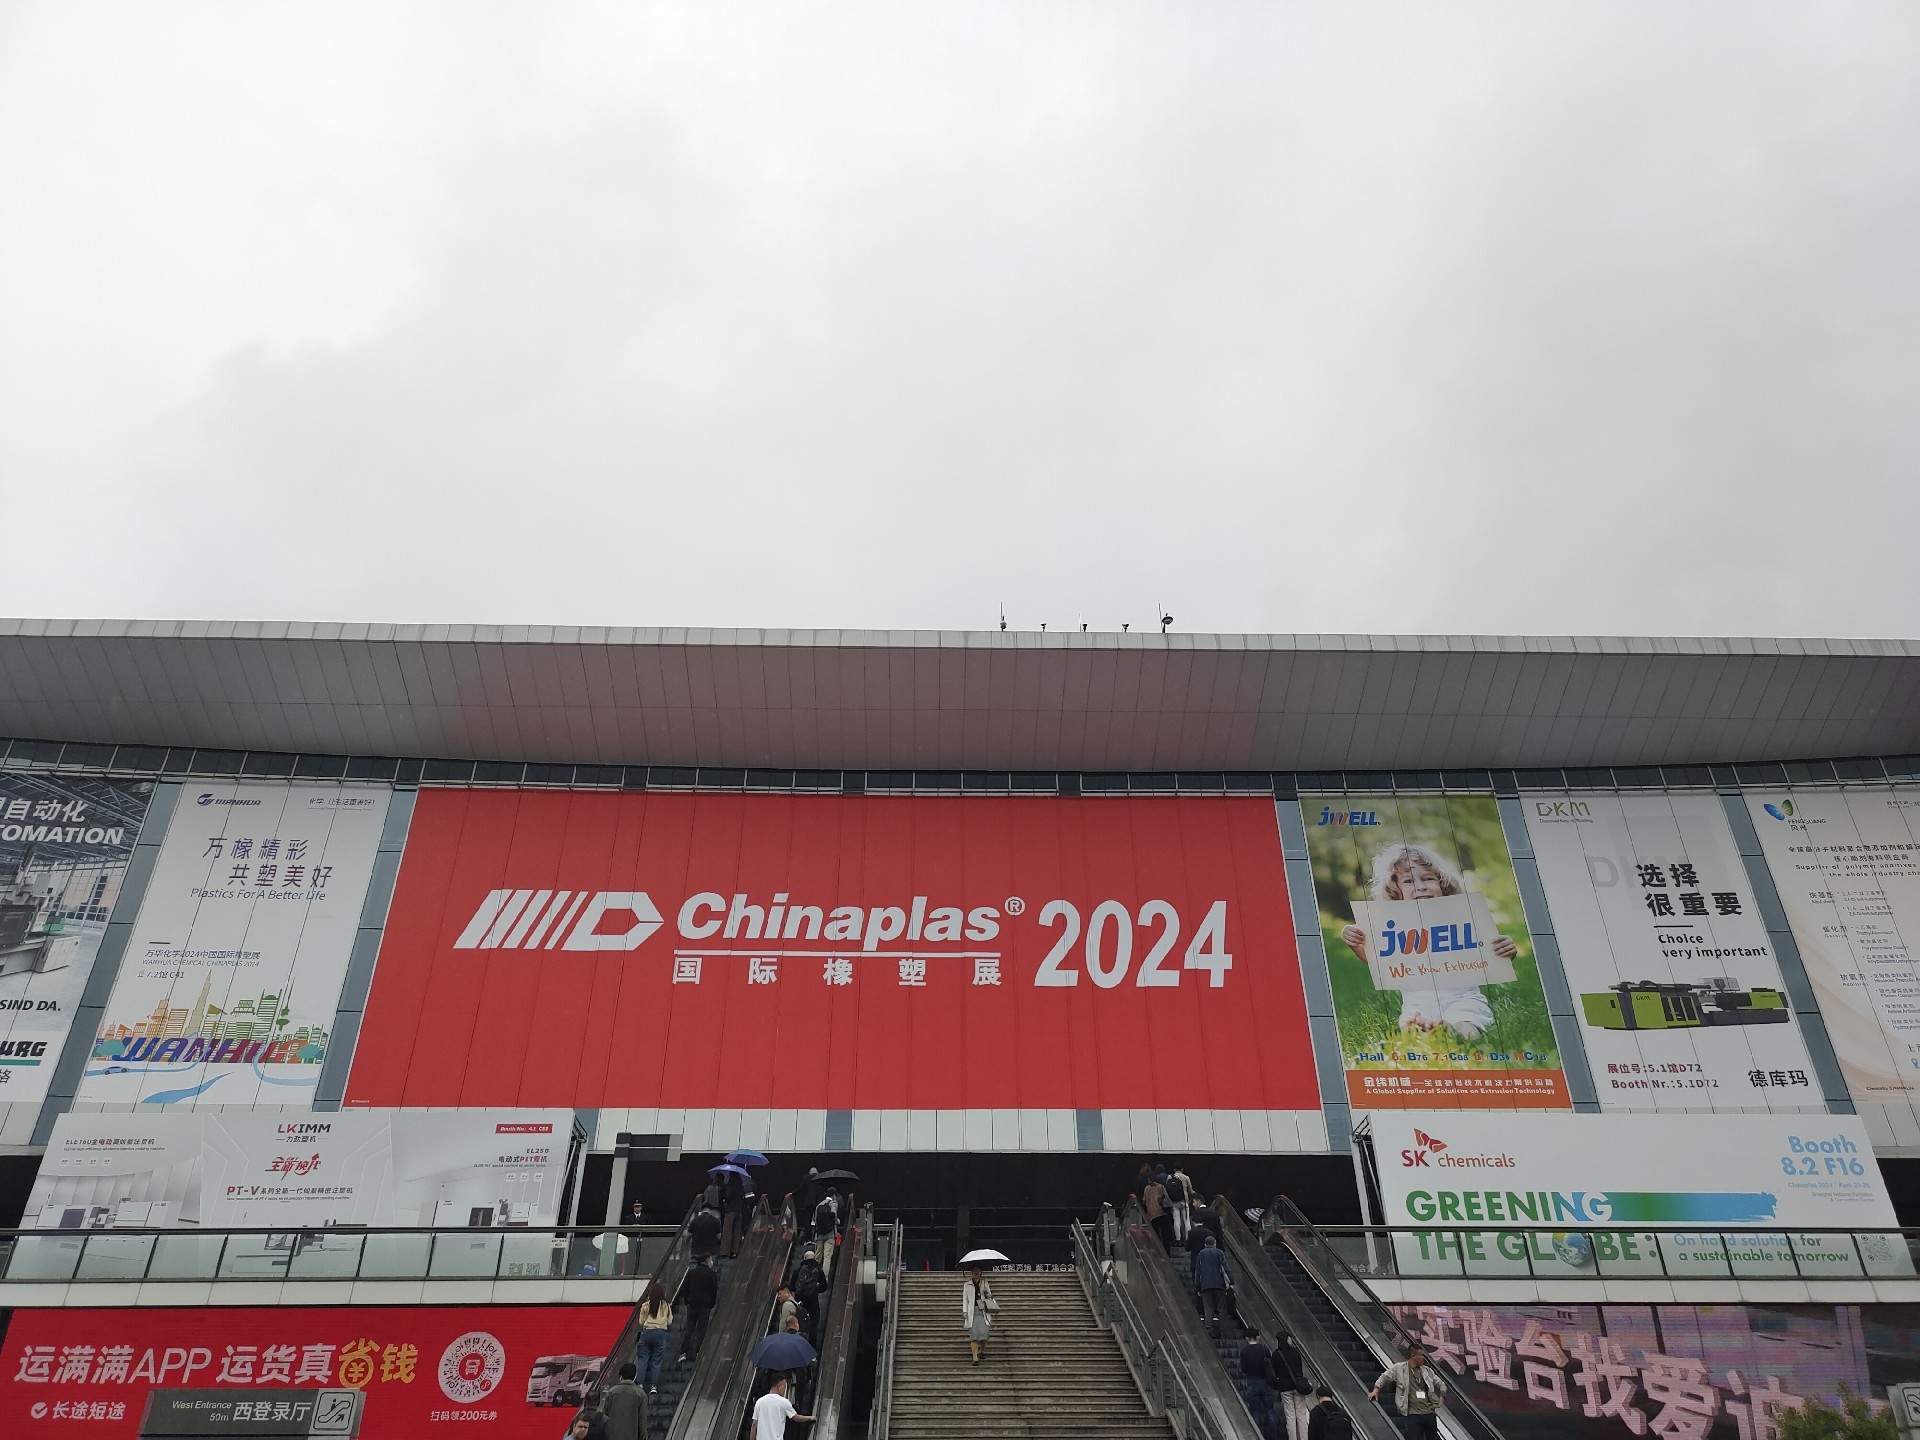 Shanghai Kunray----Chinaplas 2024